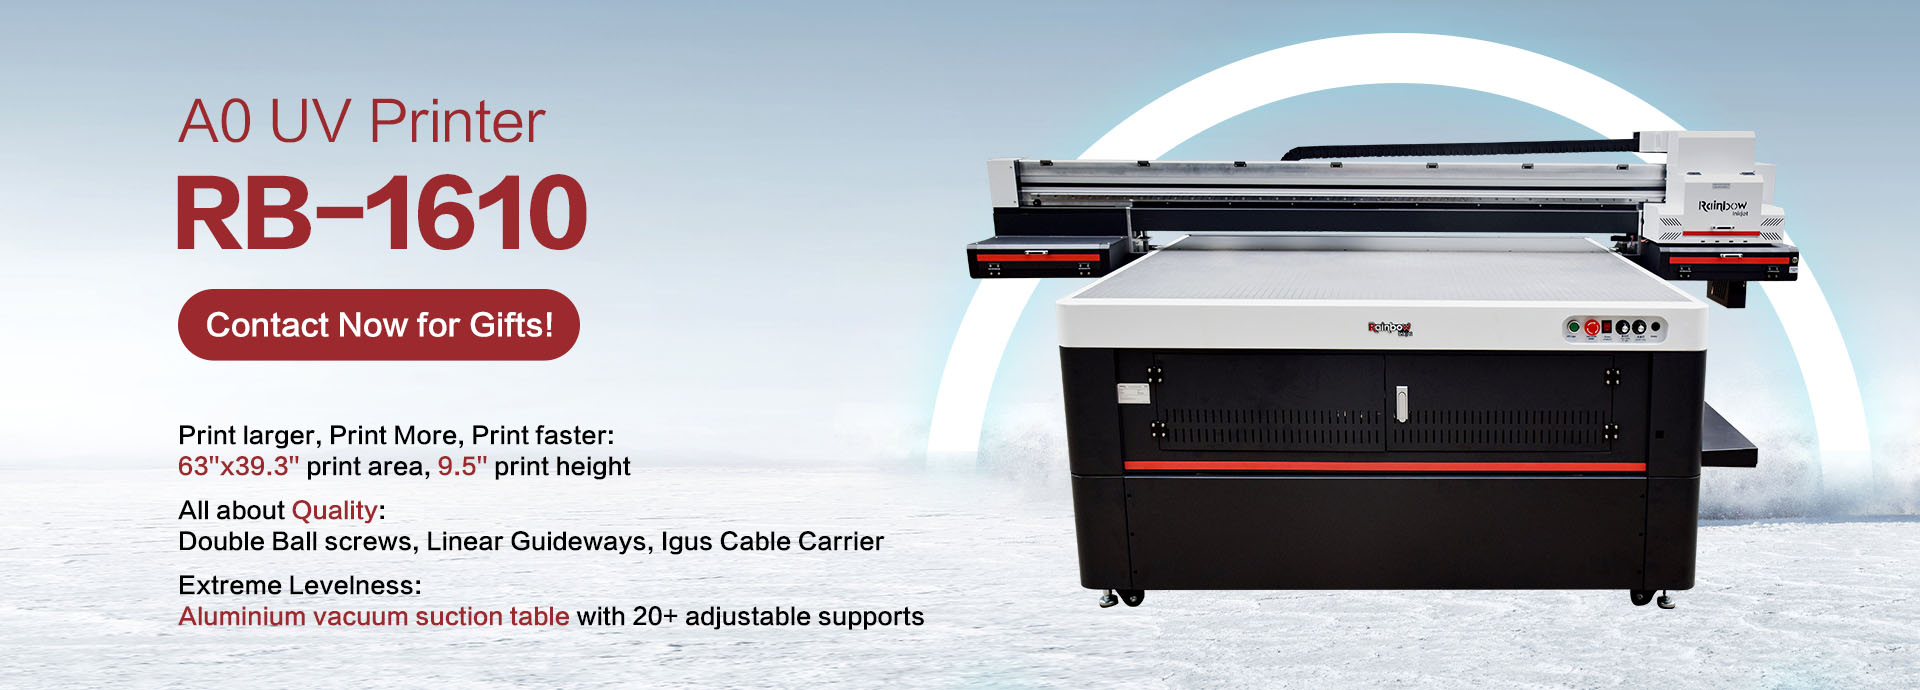 1610 a0 uv tekiz printer